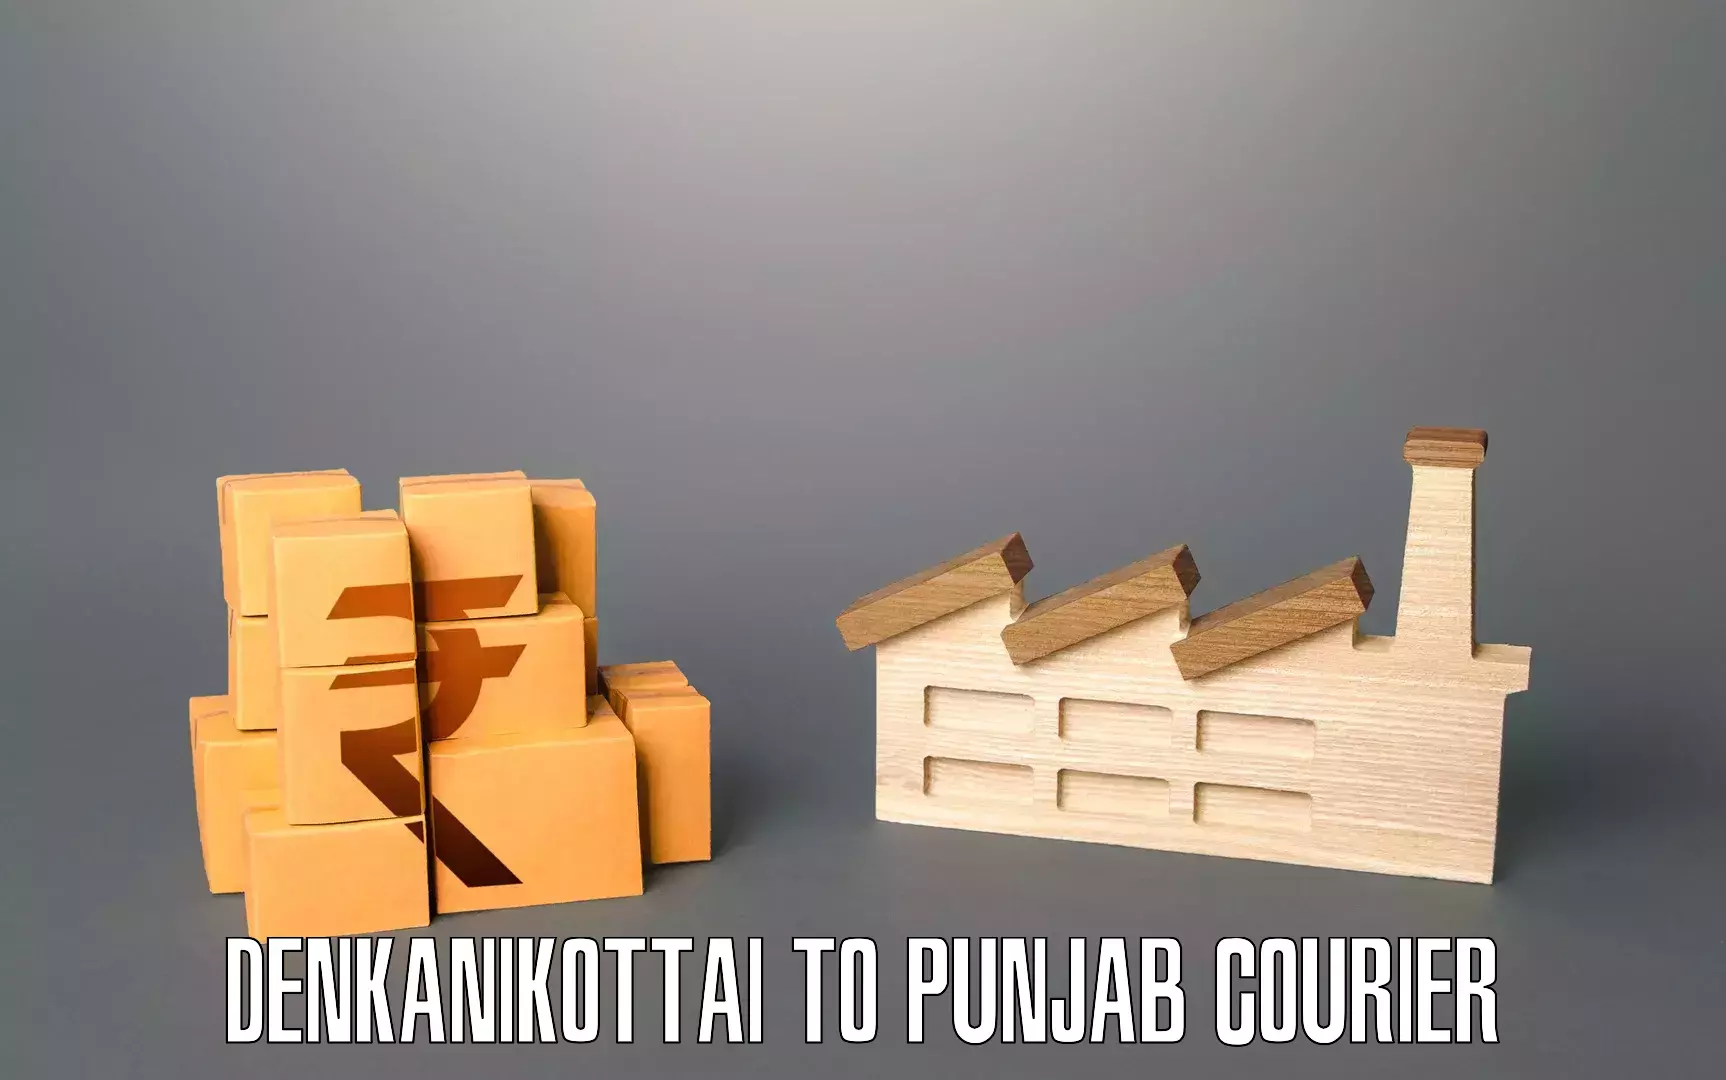 Reliable movers in Denkanikottai to Nabha